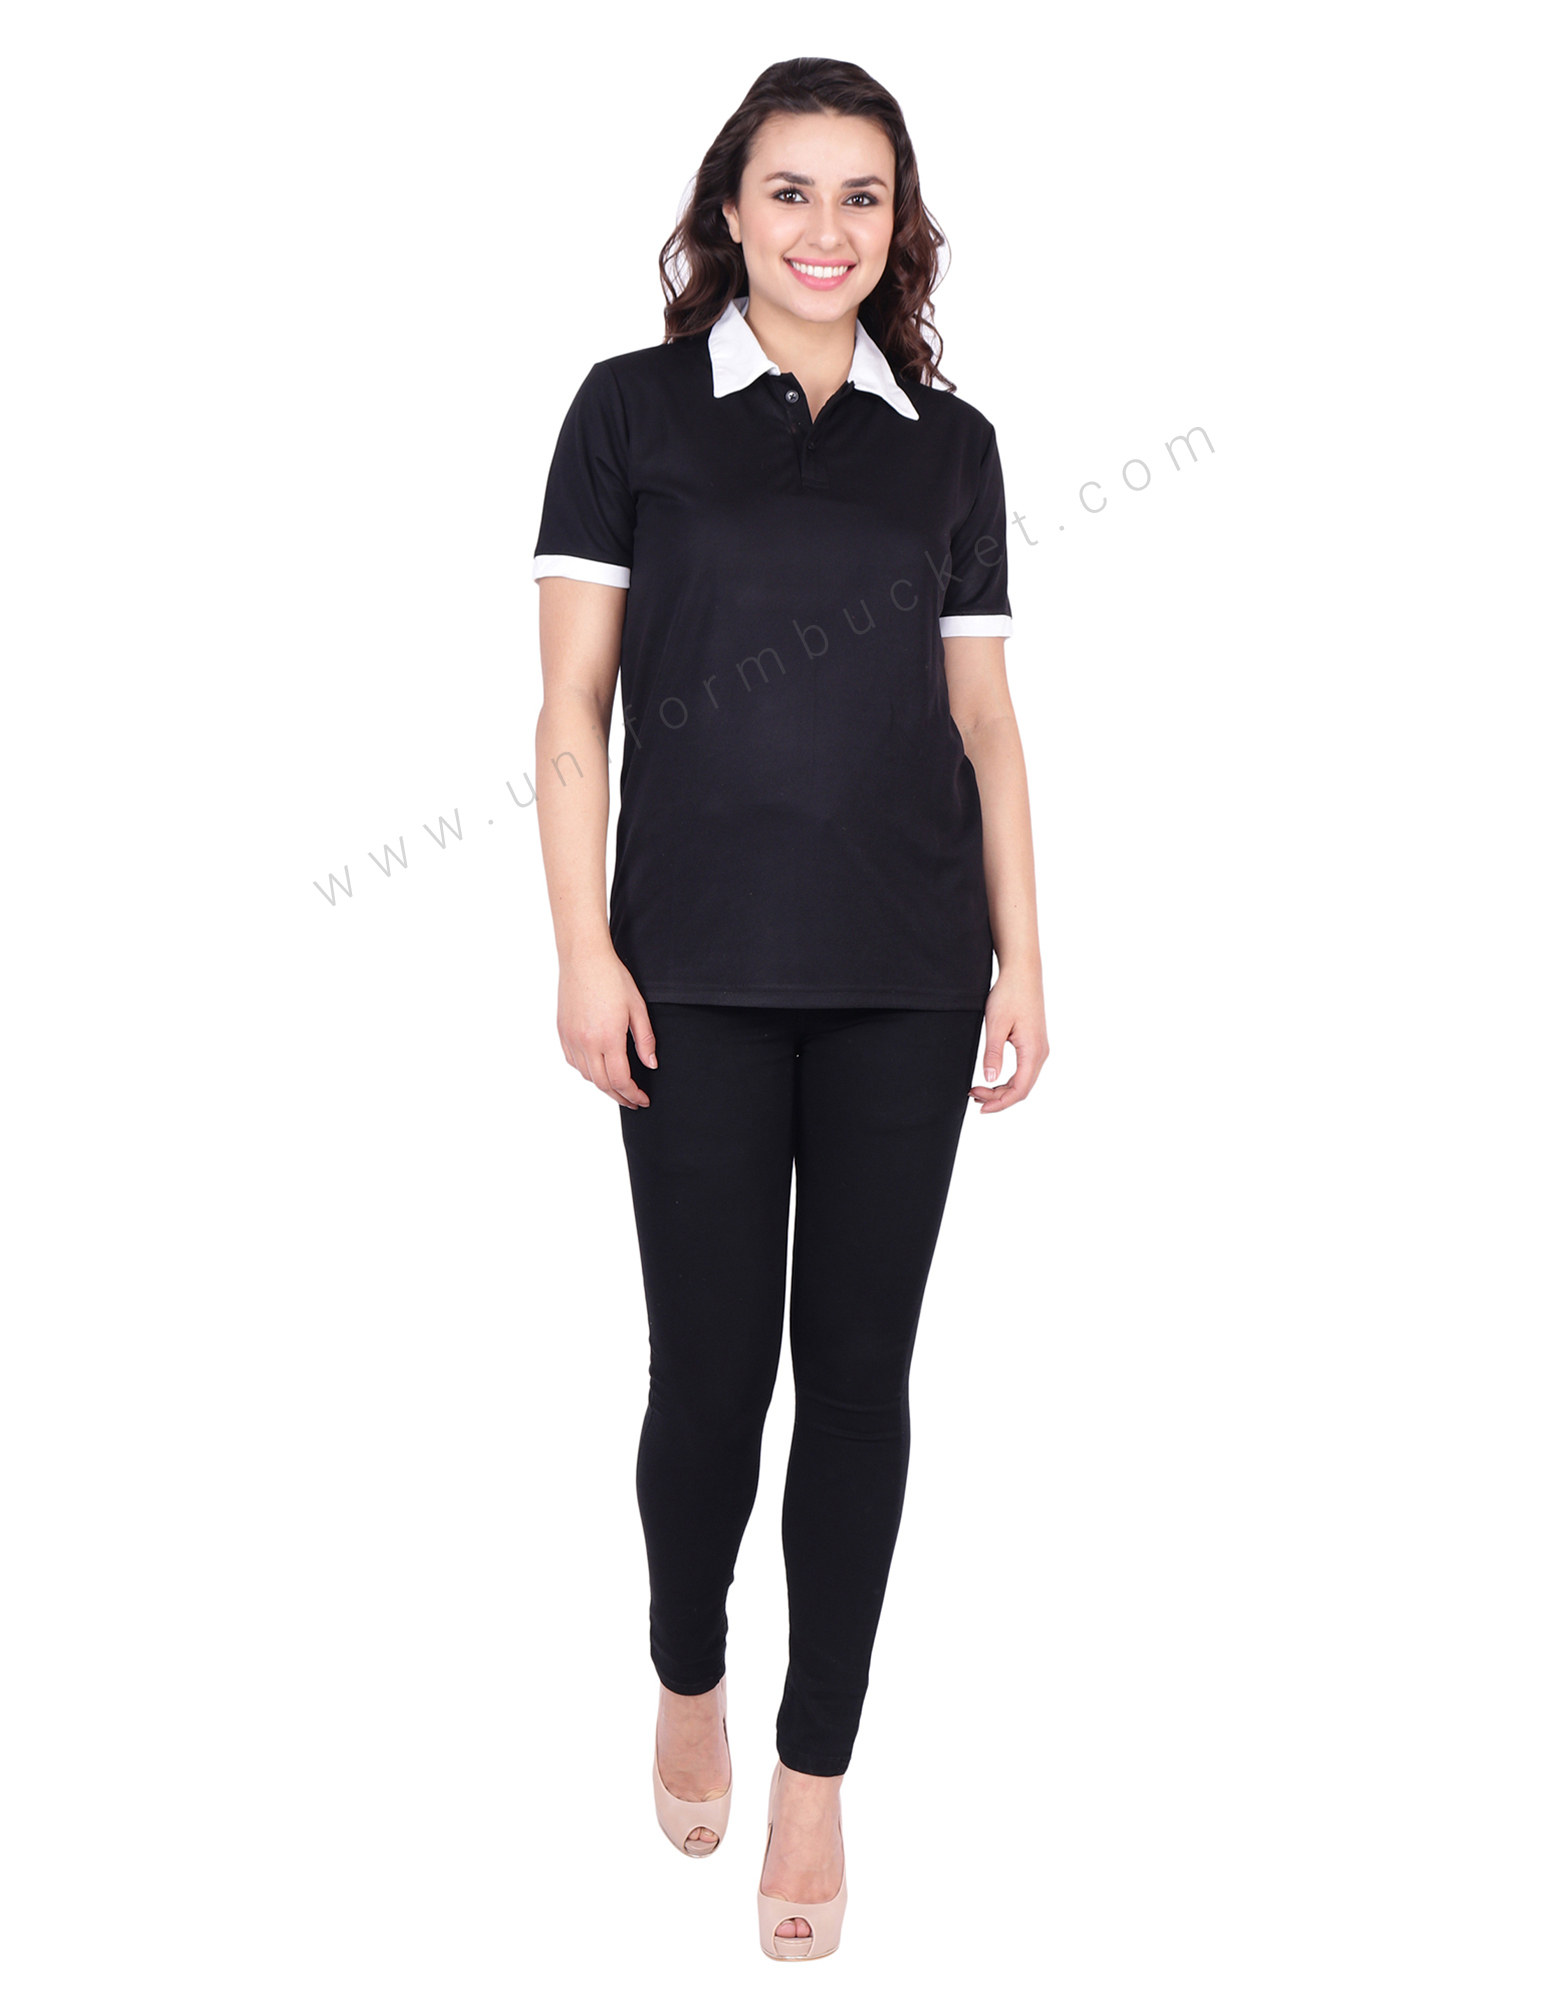 Buy Black & White Designer Polo T-Shirt For Female Online @ Best Prices ...